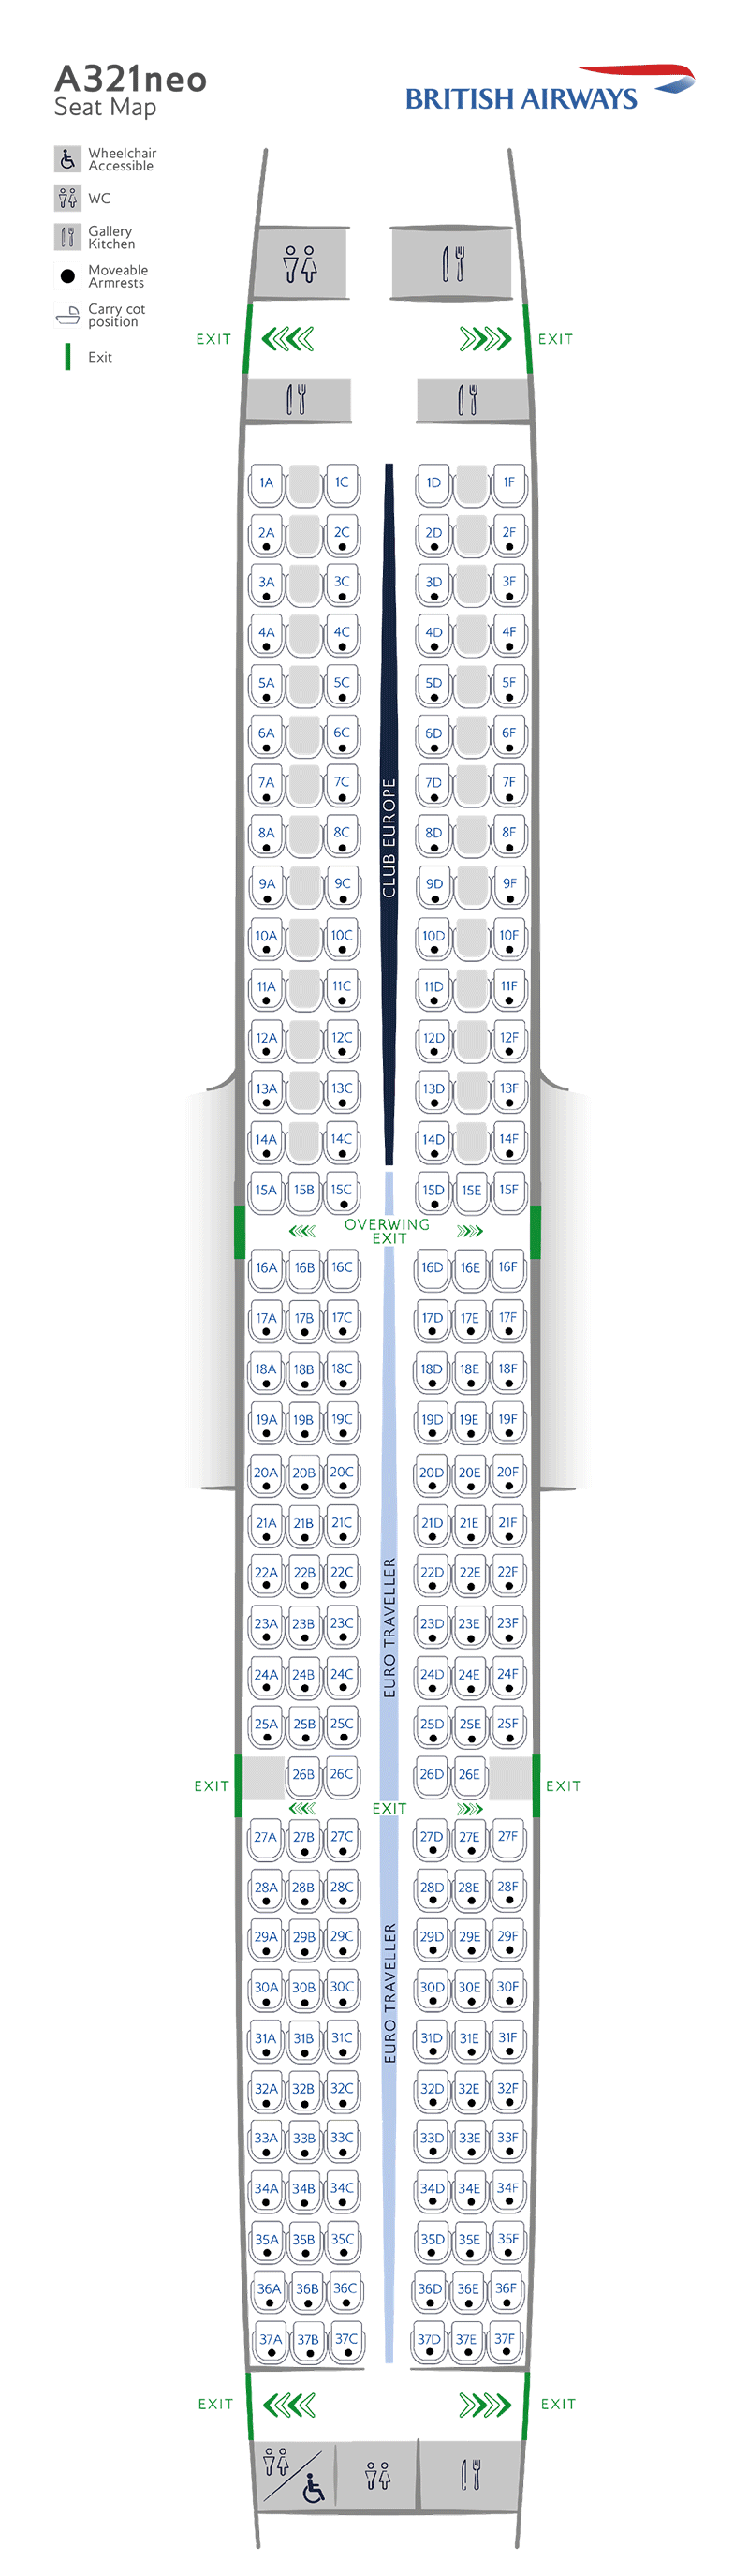 Схема расположения сидений в A321neo